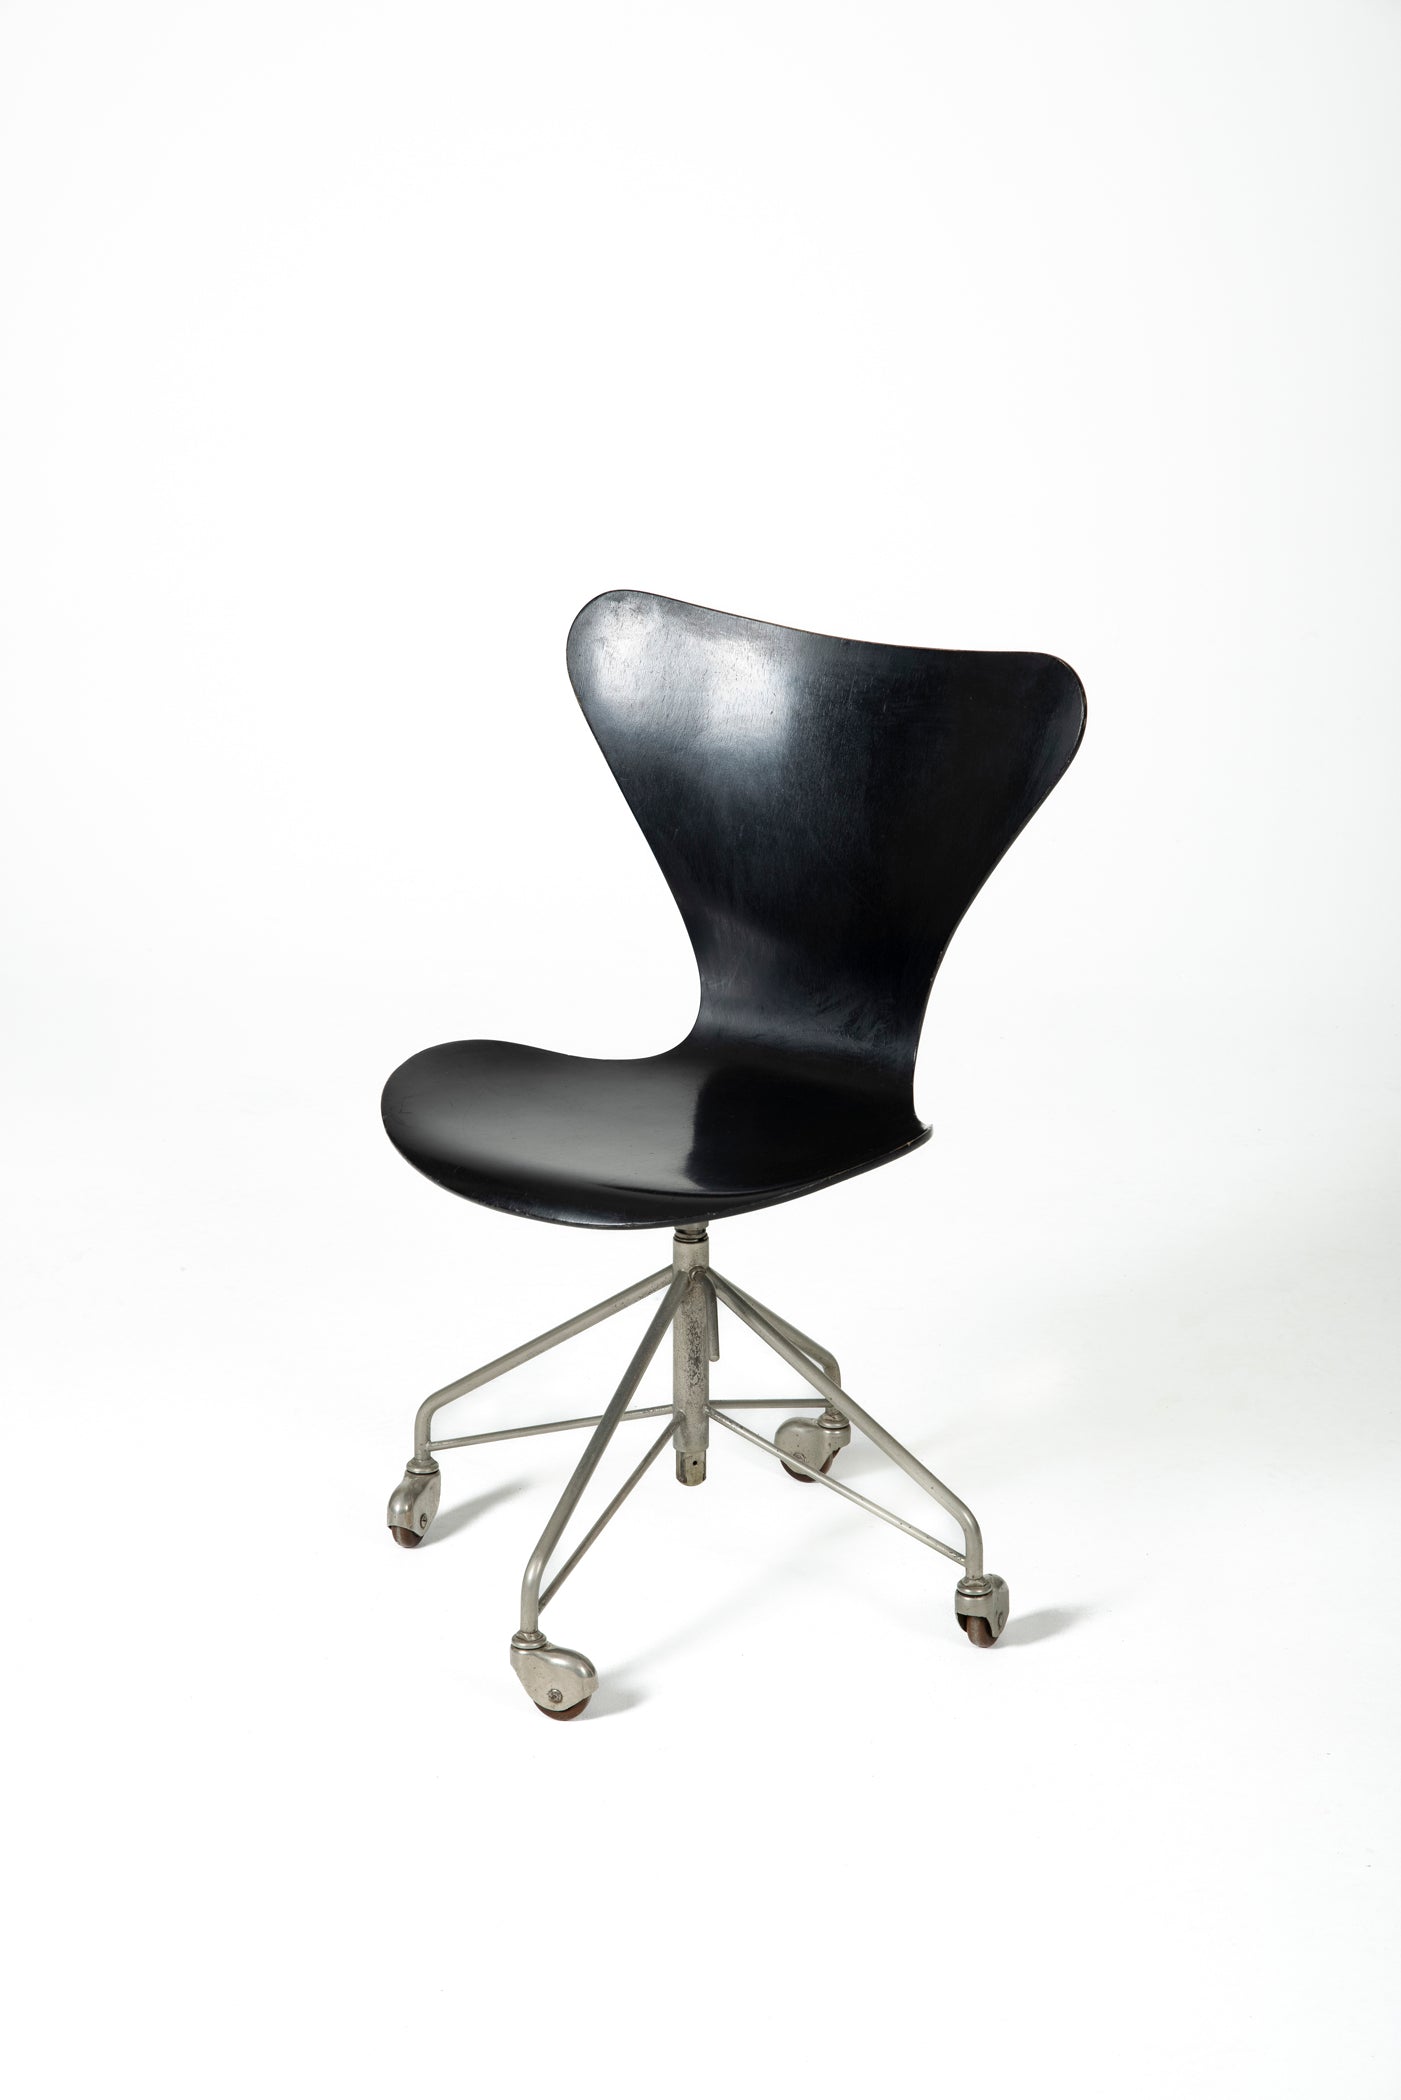 Chaise de bureau, modèle 3117, du designer danois Arne Jacobsen pour Fritz Hansen. La hauteur du siège est réglable selon les envies. De très légères traces d'usage. C'est une première édition de 1958.